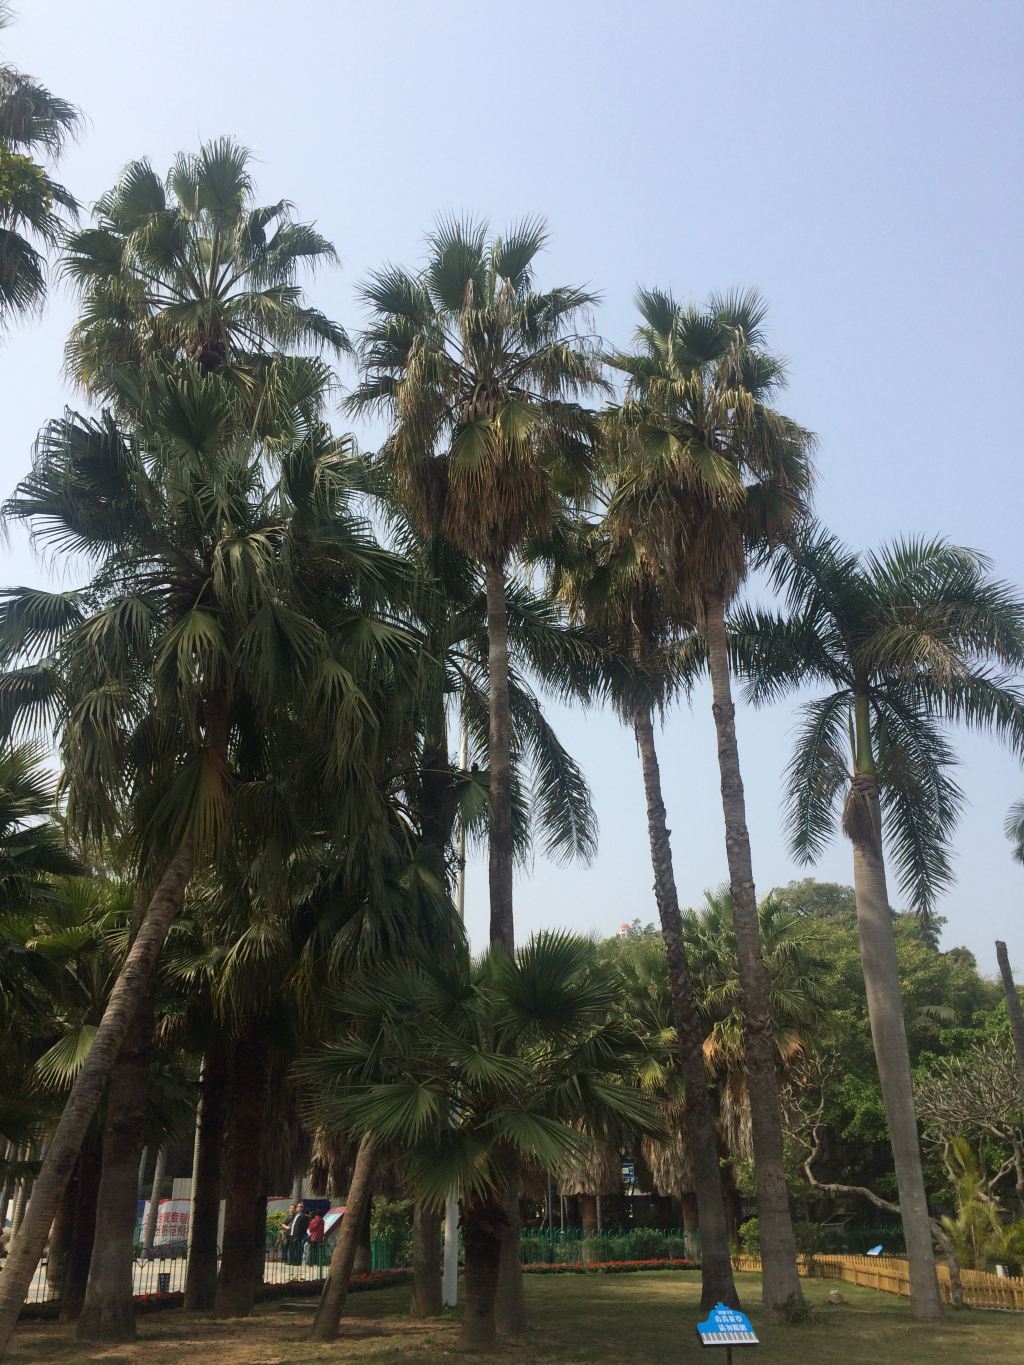 椰子树,不断的提醒我这里的天气跟夏天脱不了干系.